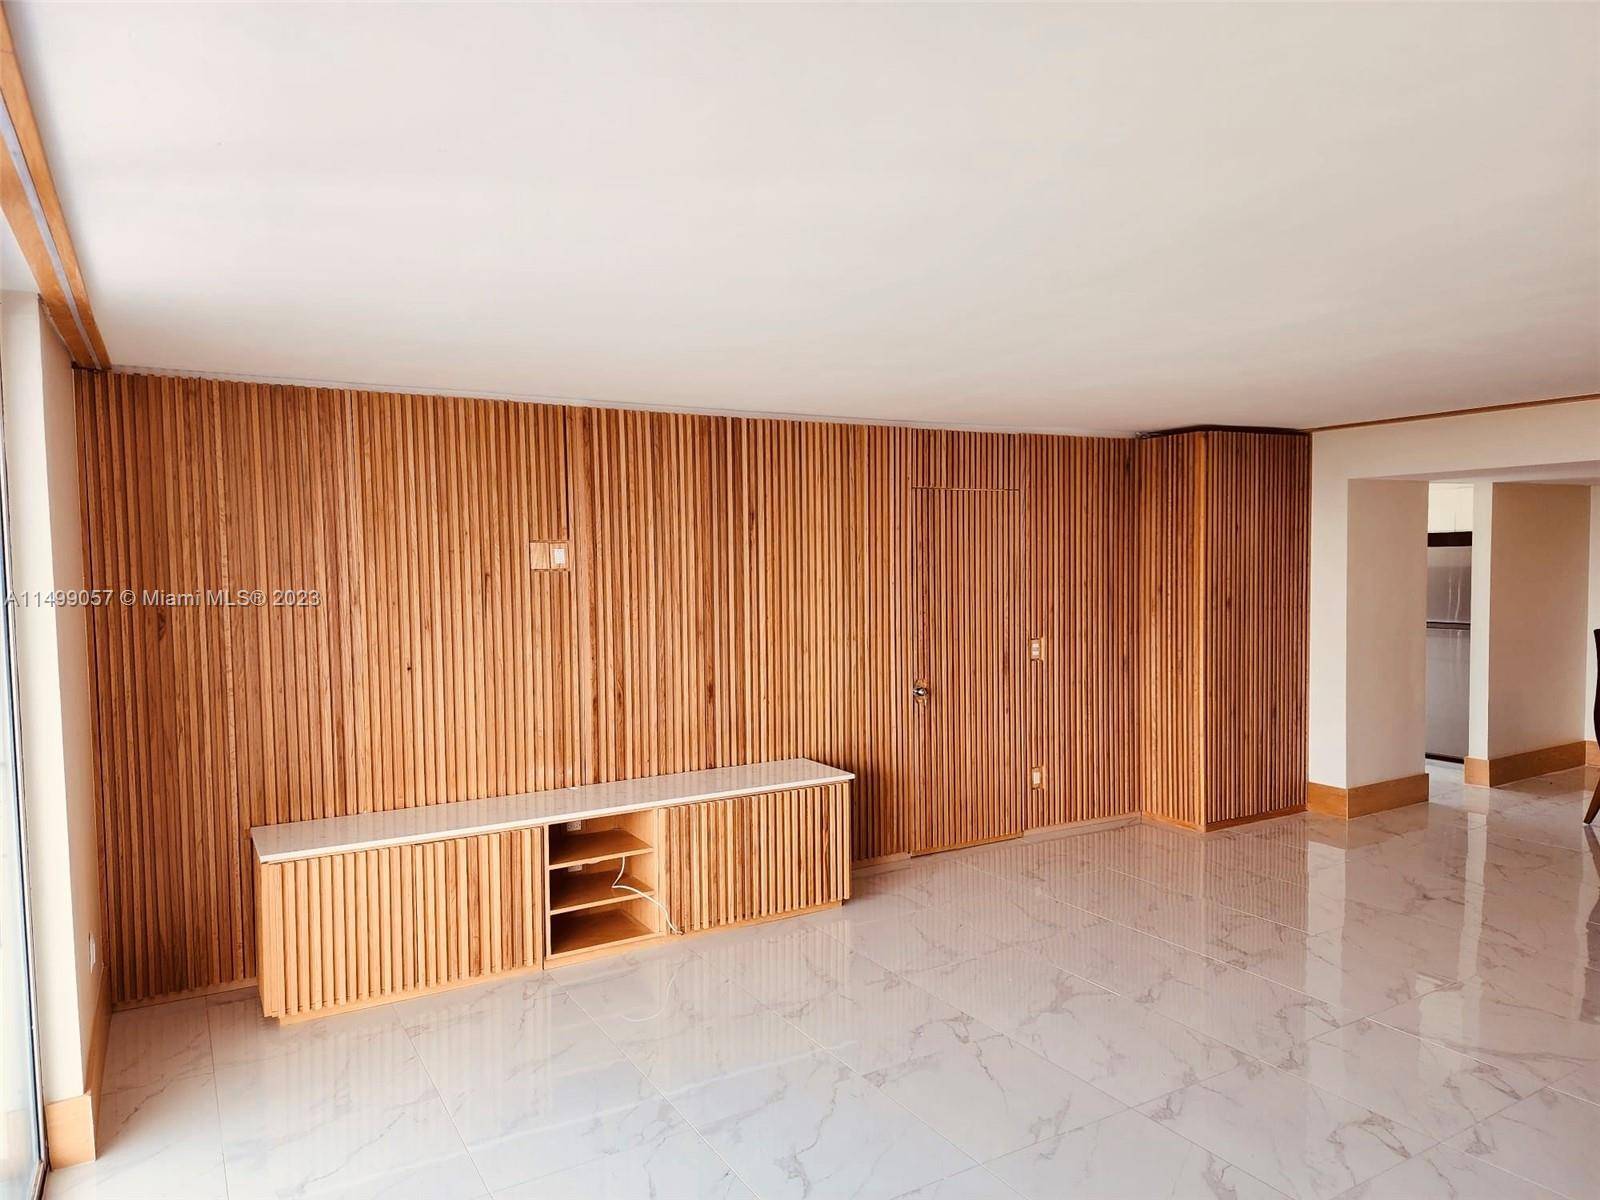 Completely remodeled modern elegant corner end residence with 2 bed 2 bath split floorplan.